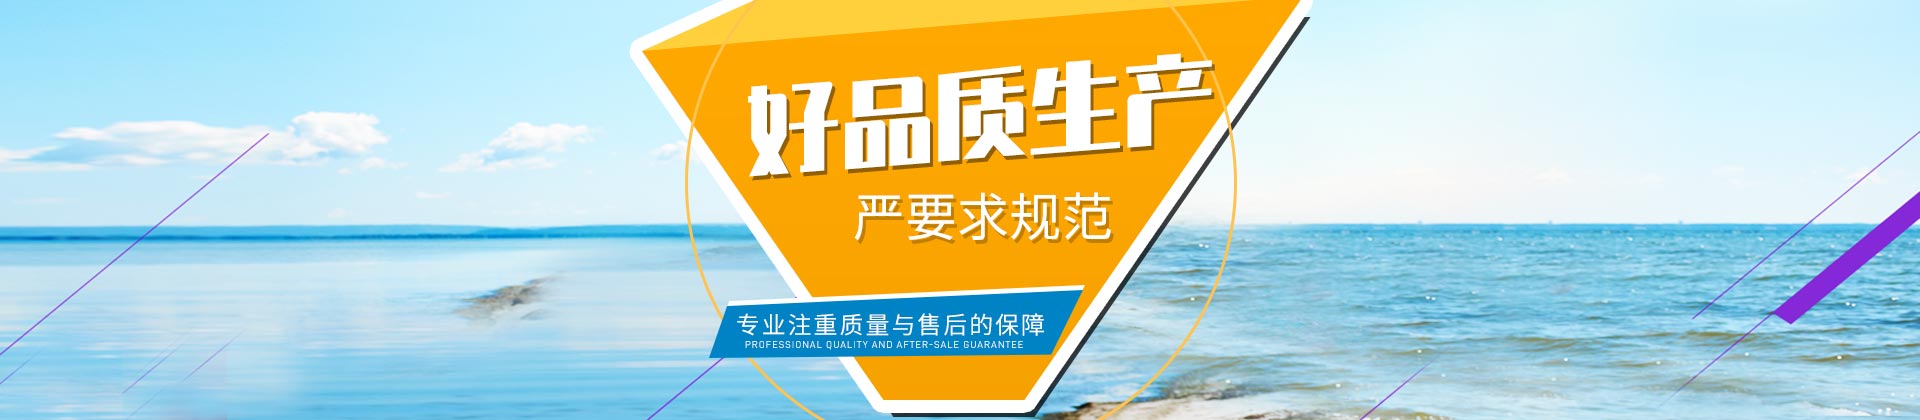 乐动ld体育-(中国)官方网站IOS/安卓通用版/手机APP设计